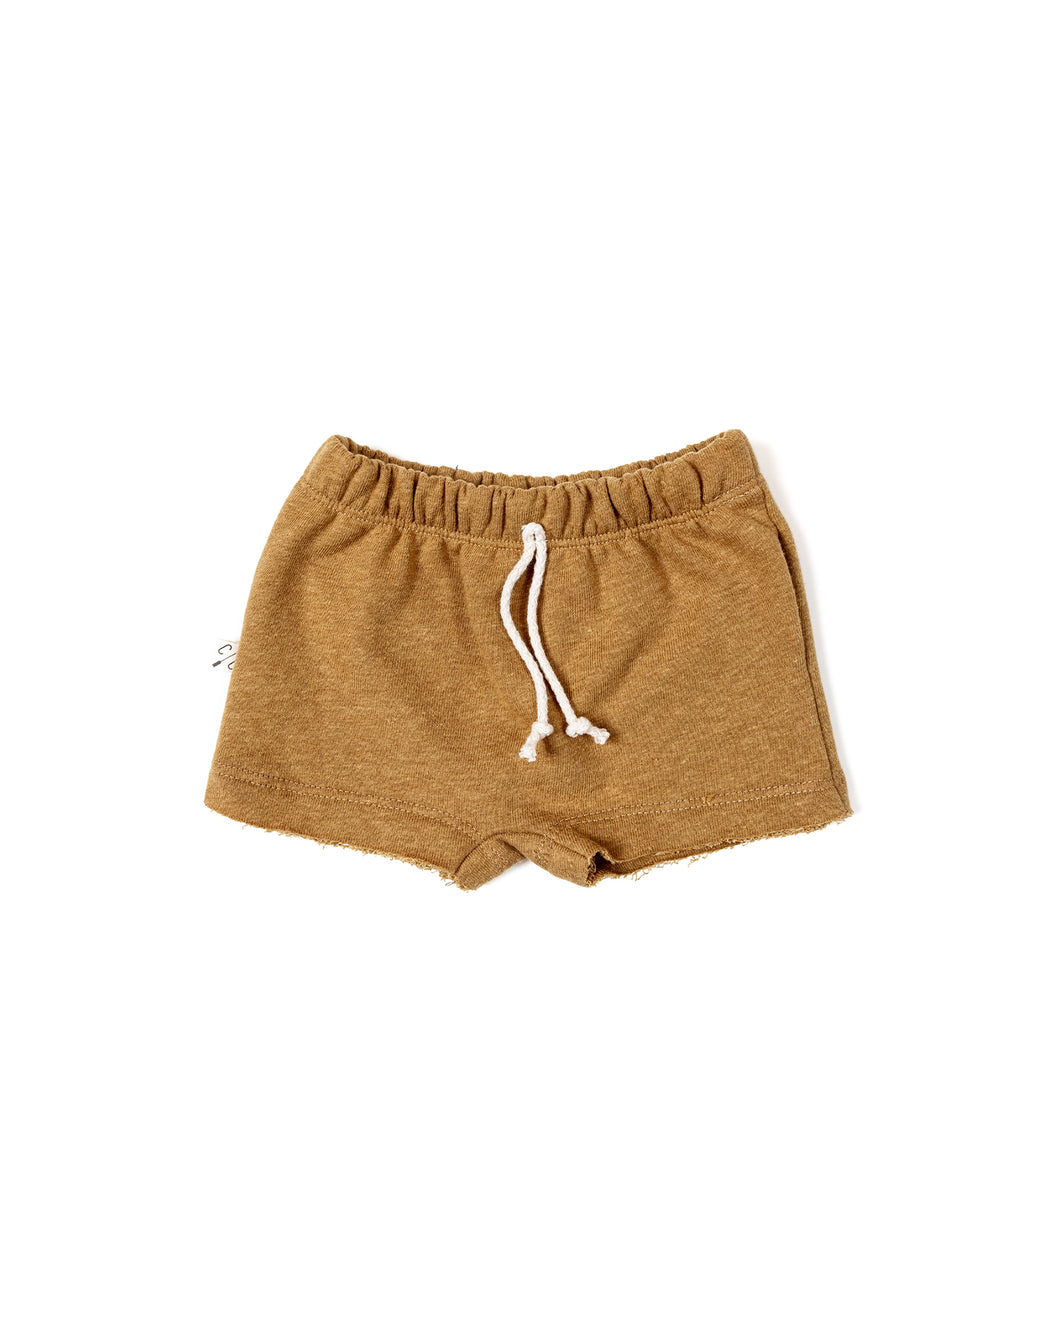 boy shorts - wheat